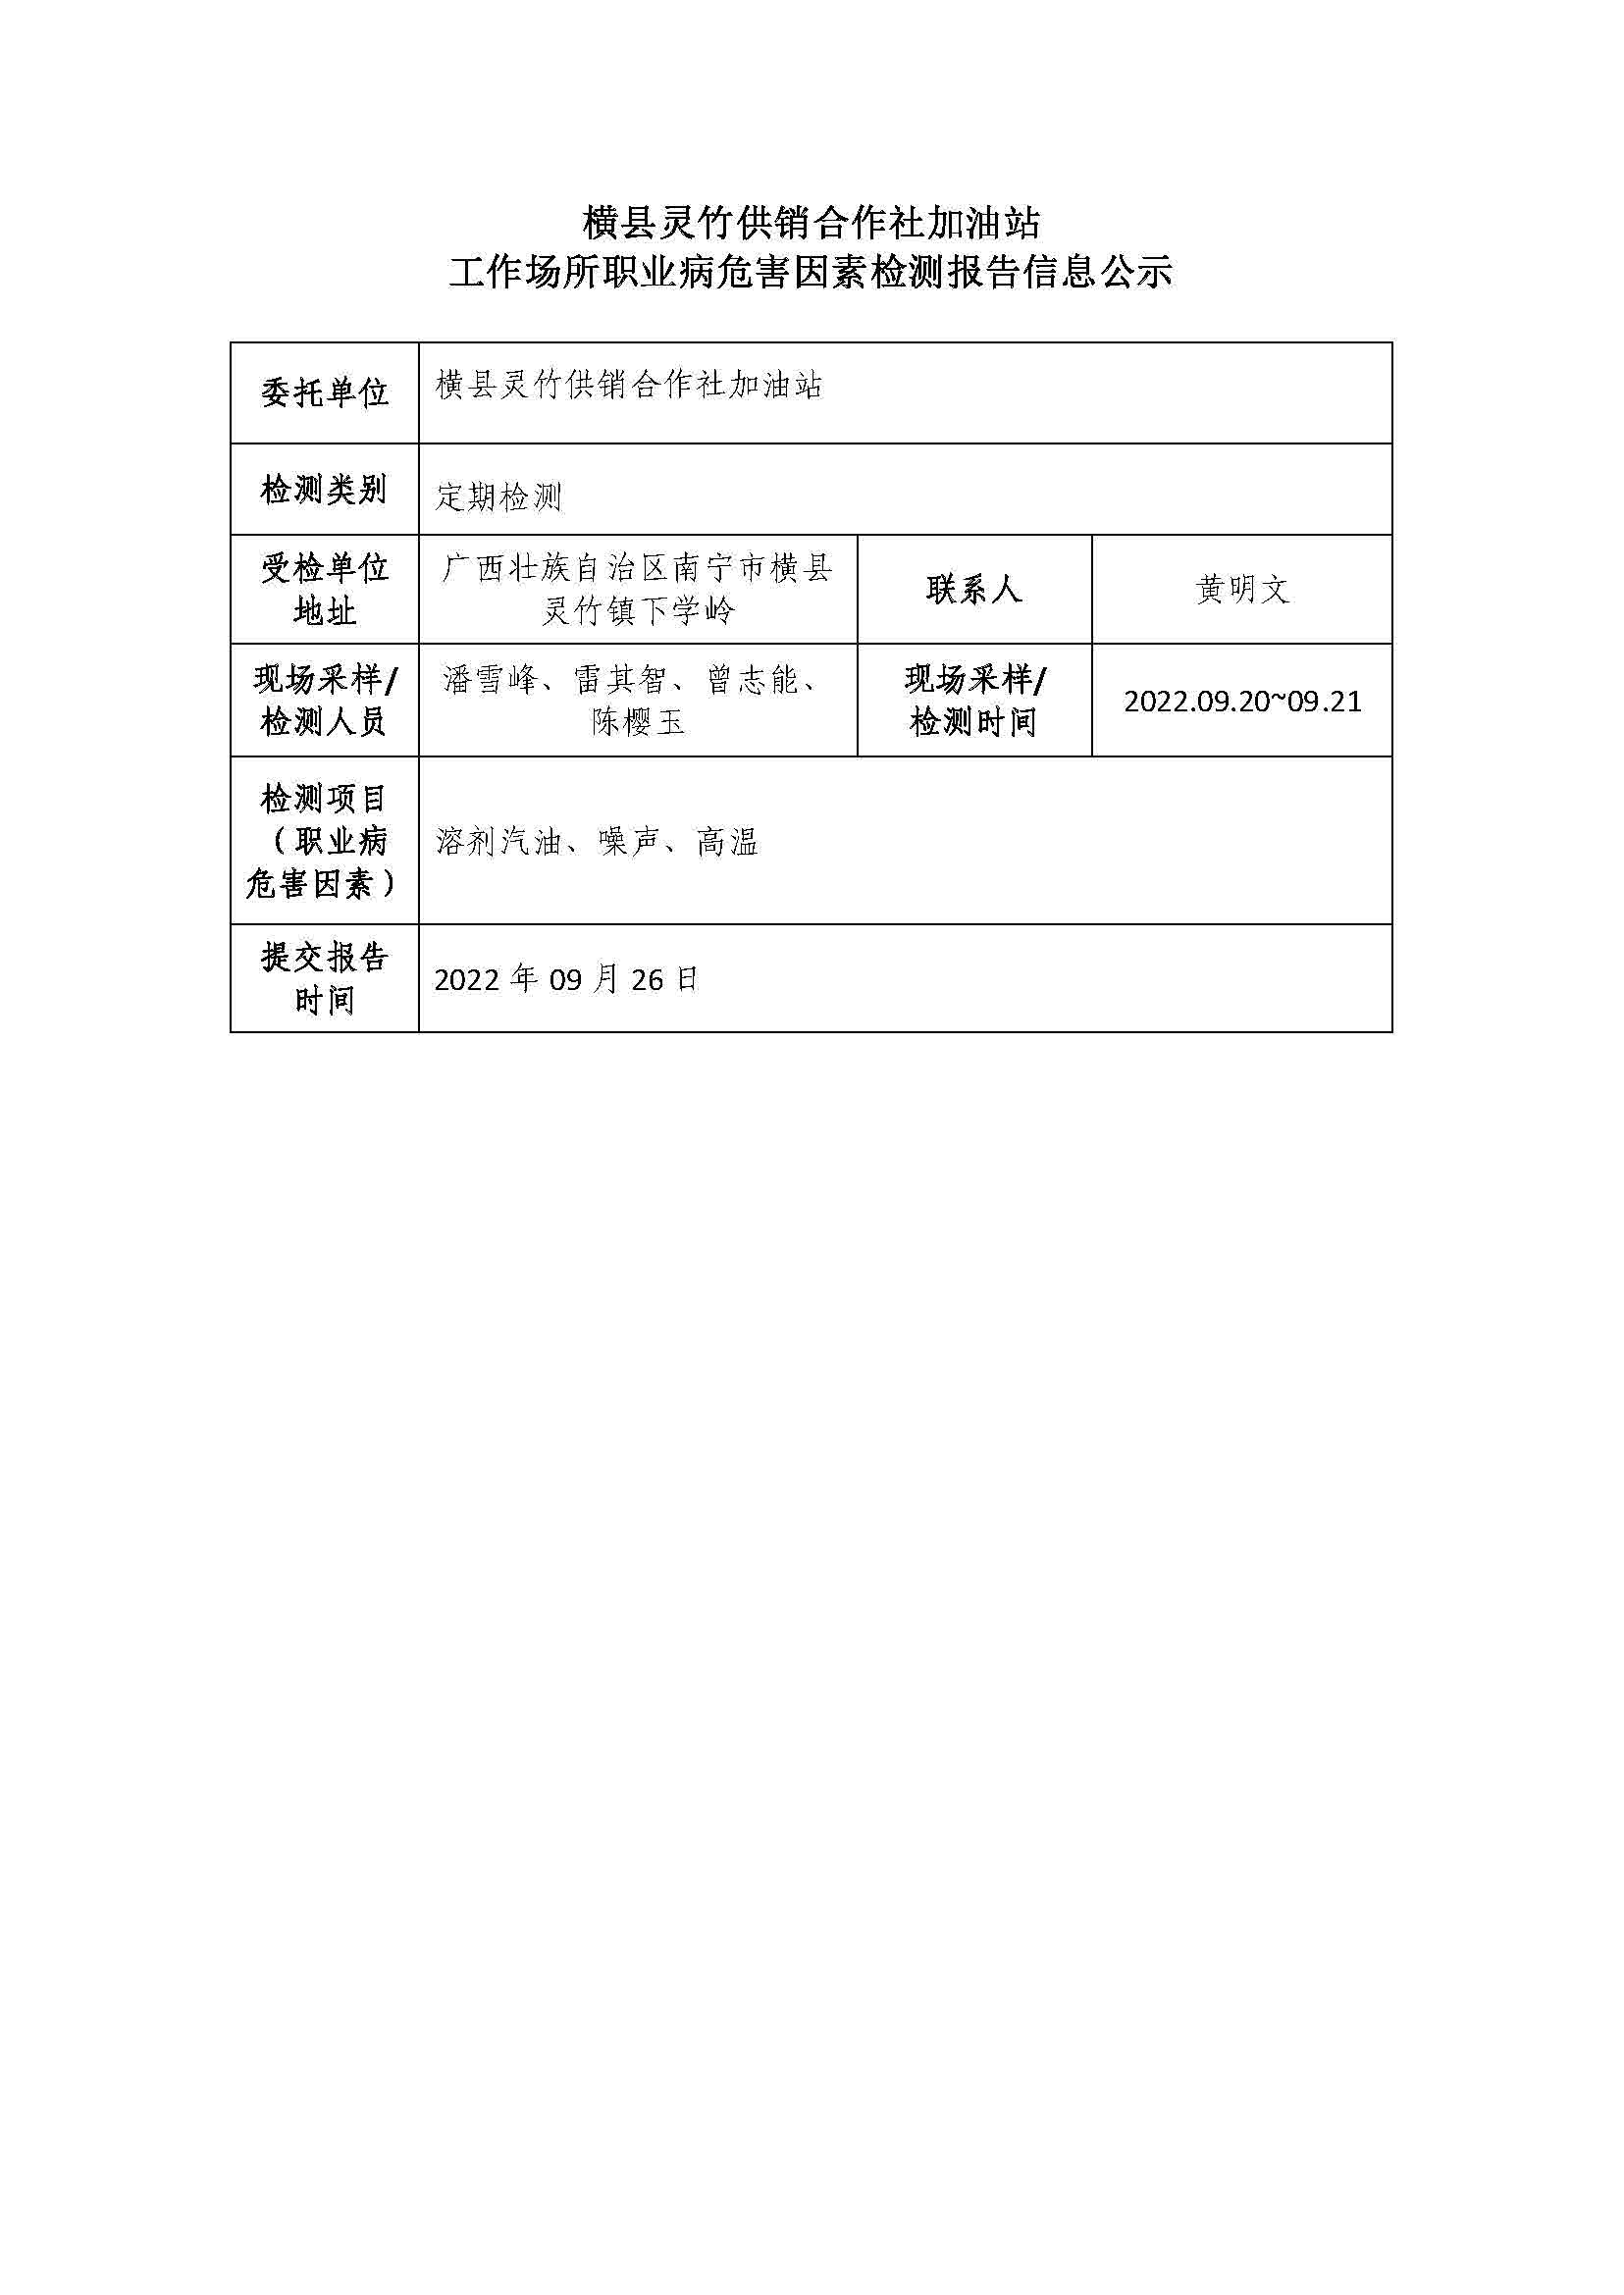 横县灵竹供销合作社加油站工作场所职业病危害因素检测报告信息公示